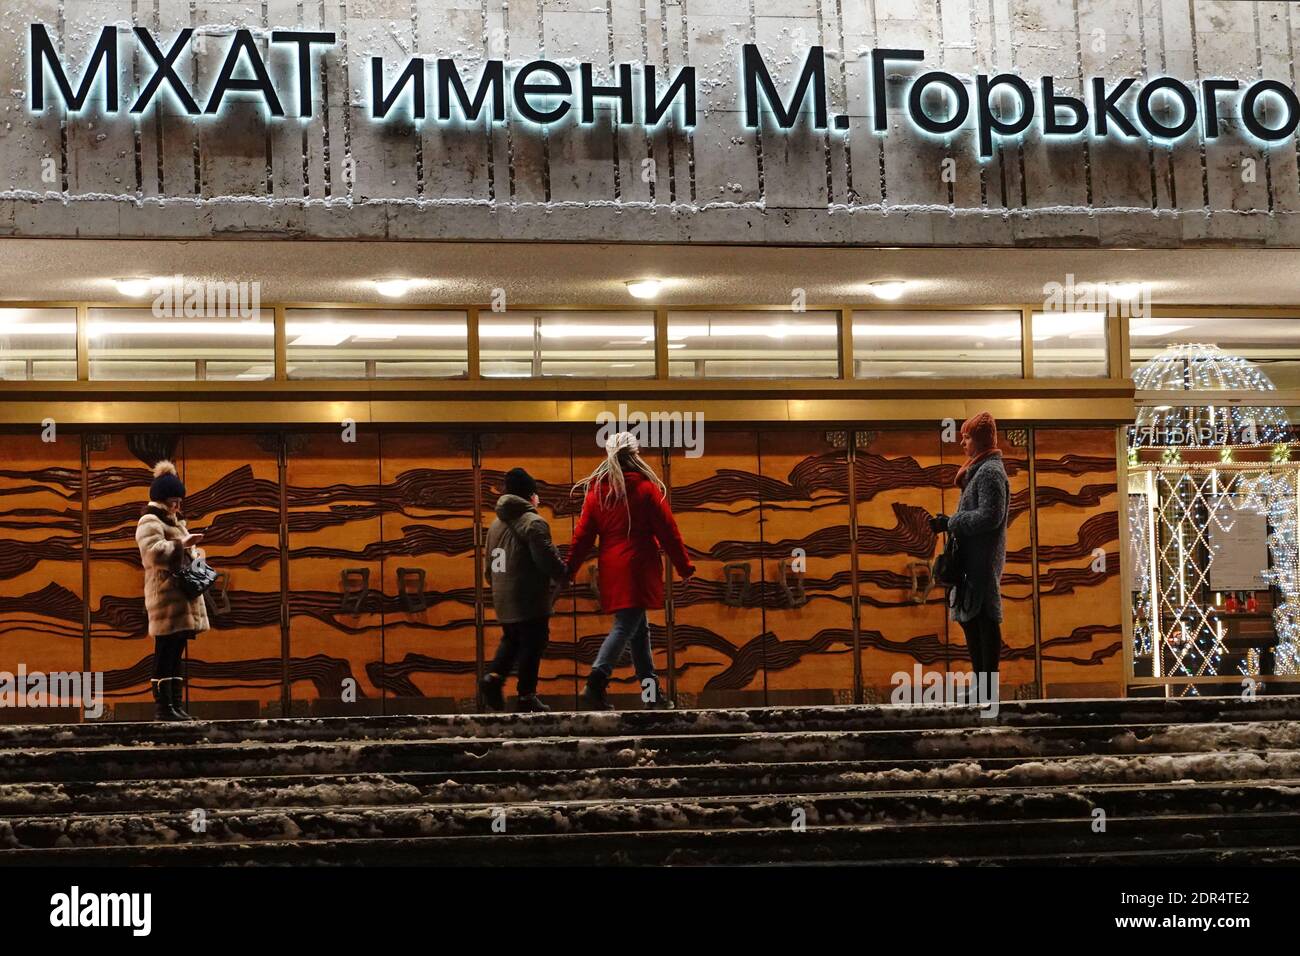 Moscow new year 2021 (christmas) decoration. Moskovskiy Khudozhestvennyy Akademicheskiy Teatr (Moscow Art Theater) M. Gor'kogo Stock Photo